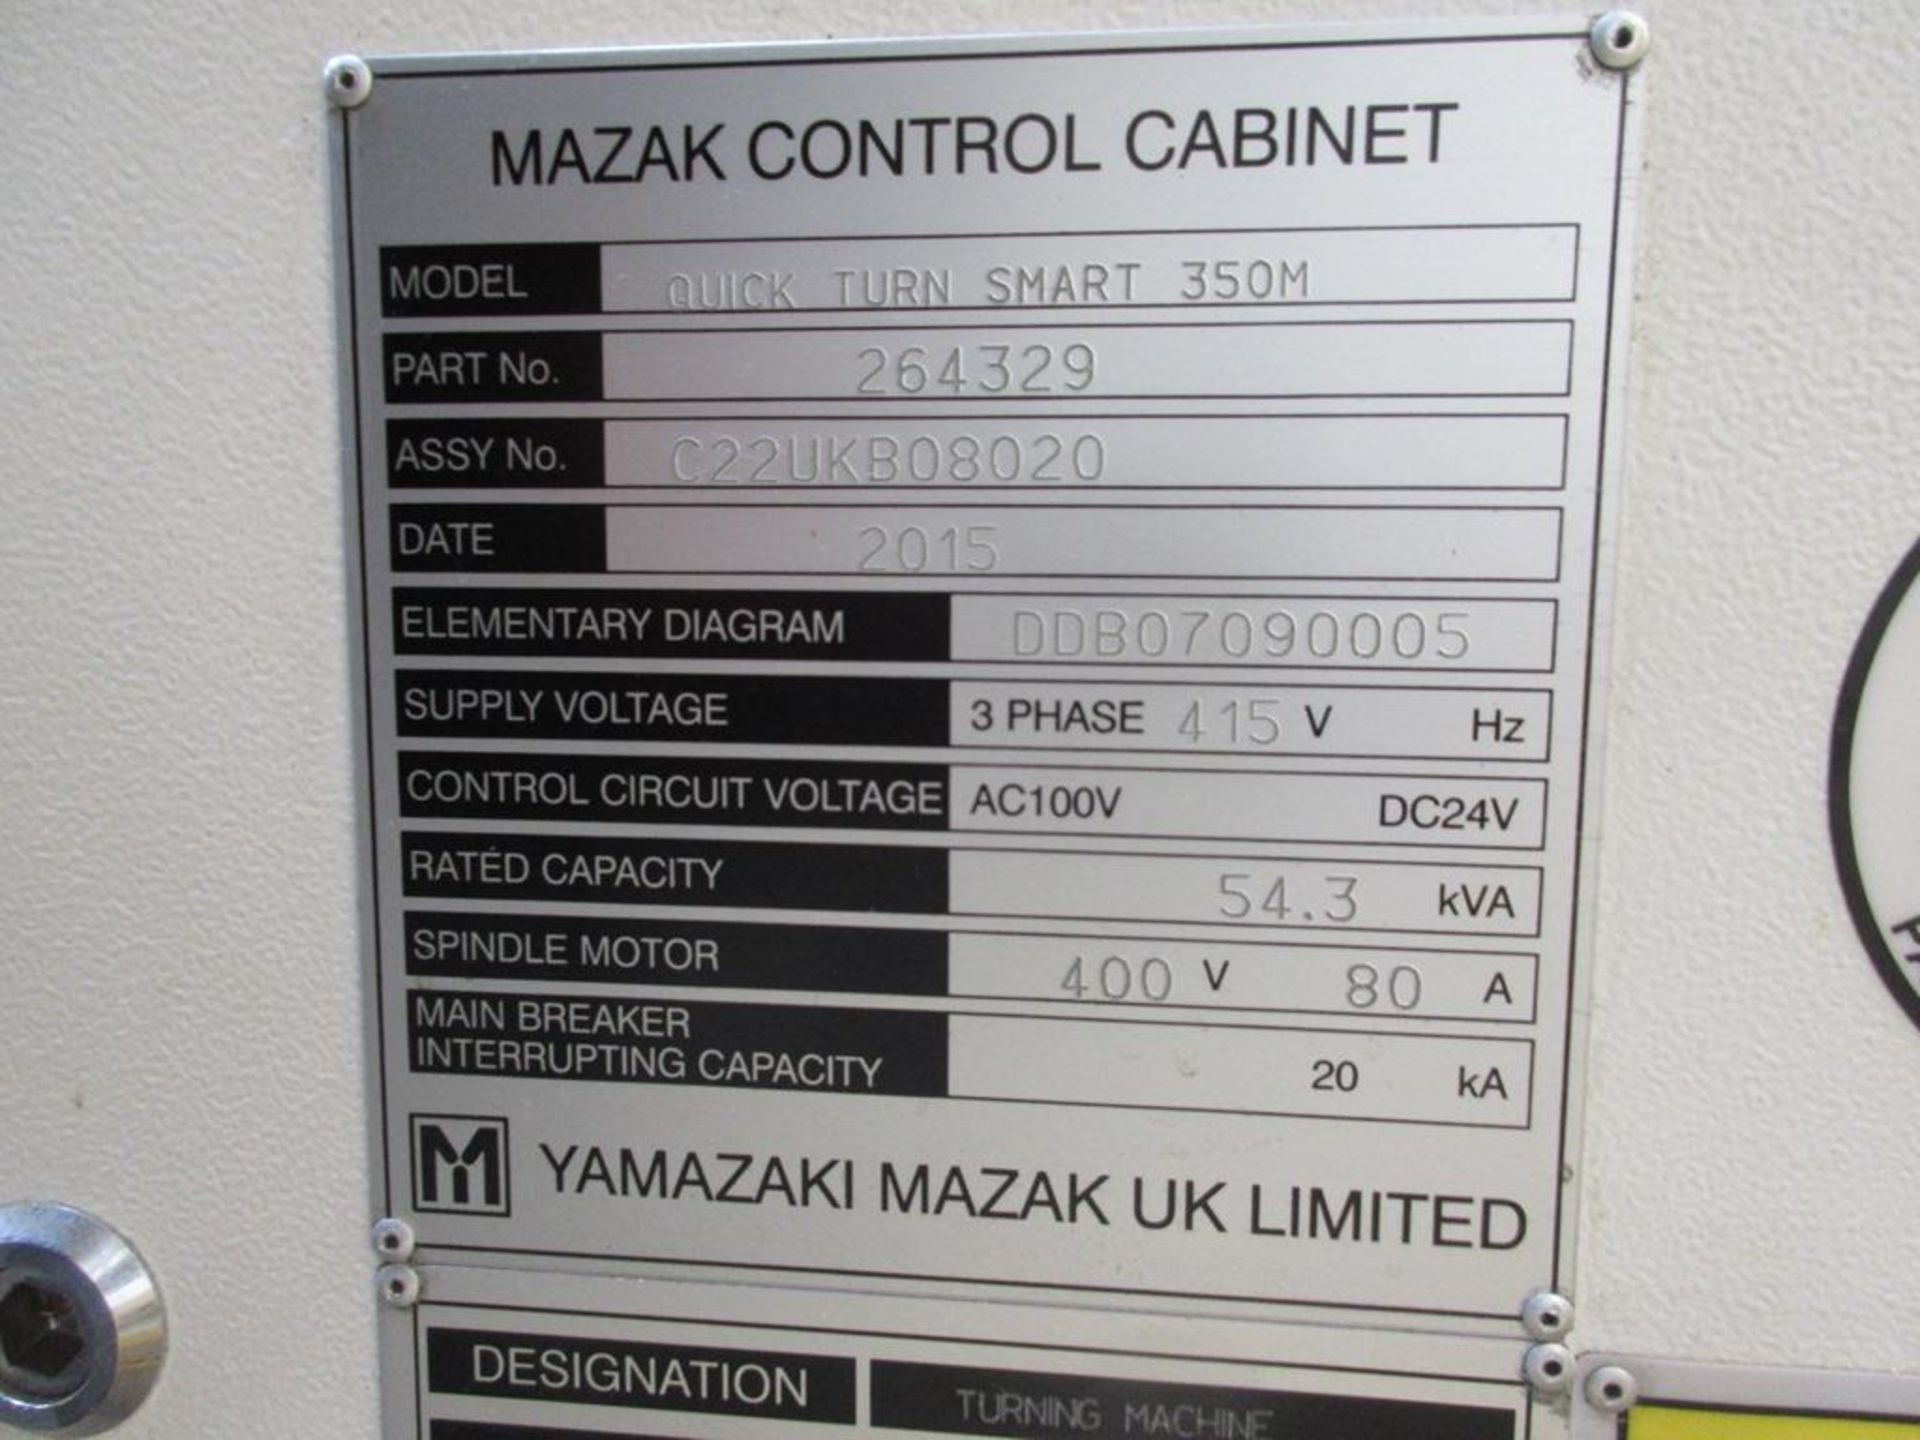 Mazak Quick Turn Smart 350M CNC slant bed turning centre (2015) - Image 8 of 14